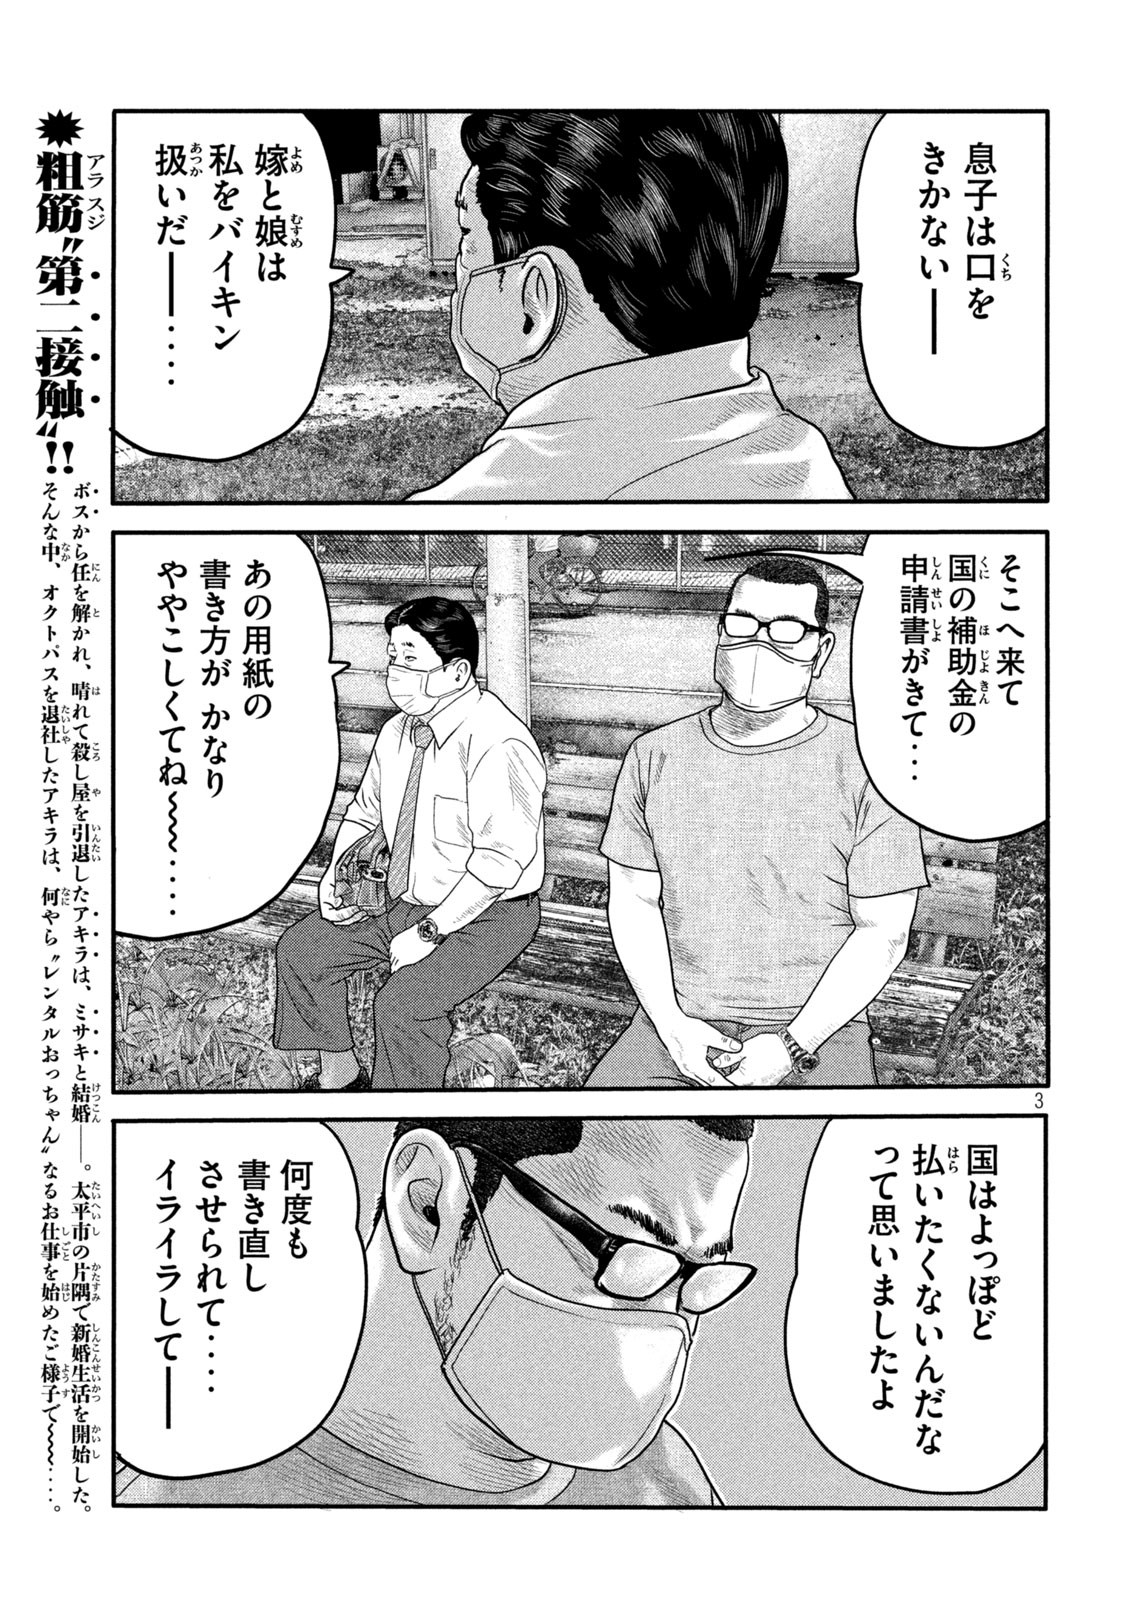 ザ・ファブル The Second Contact 第2話 - Page 3